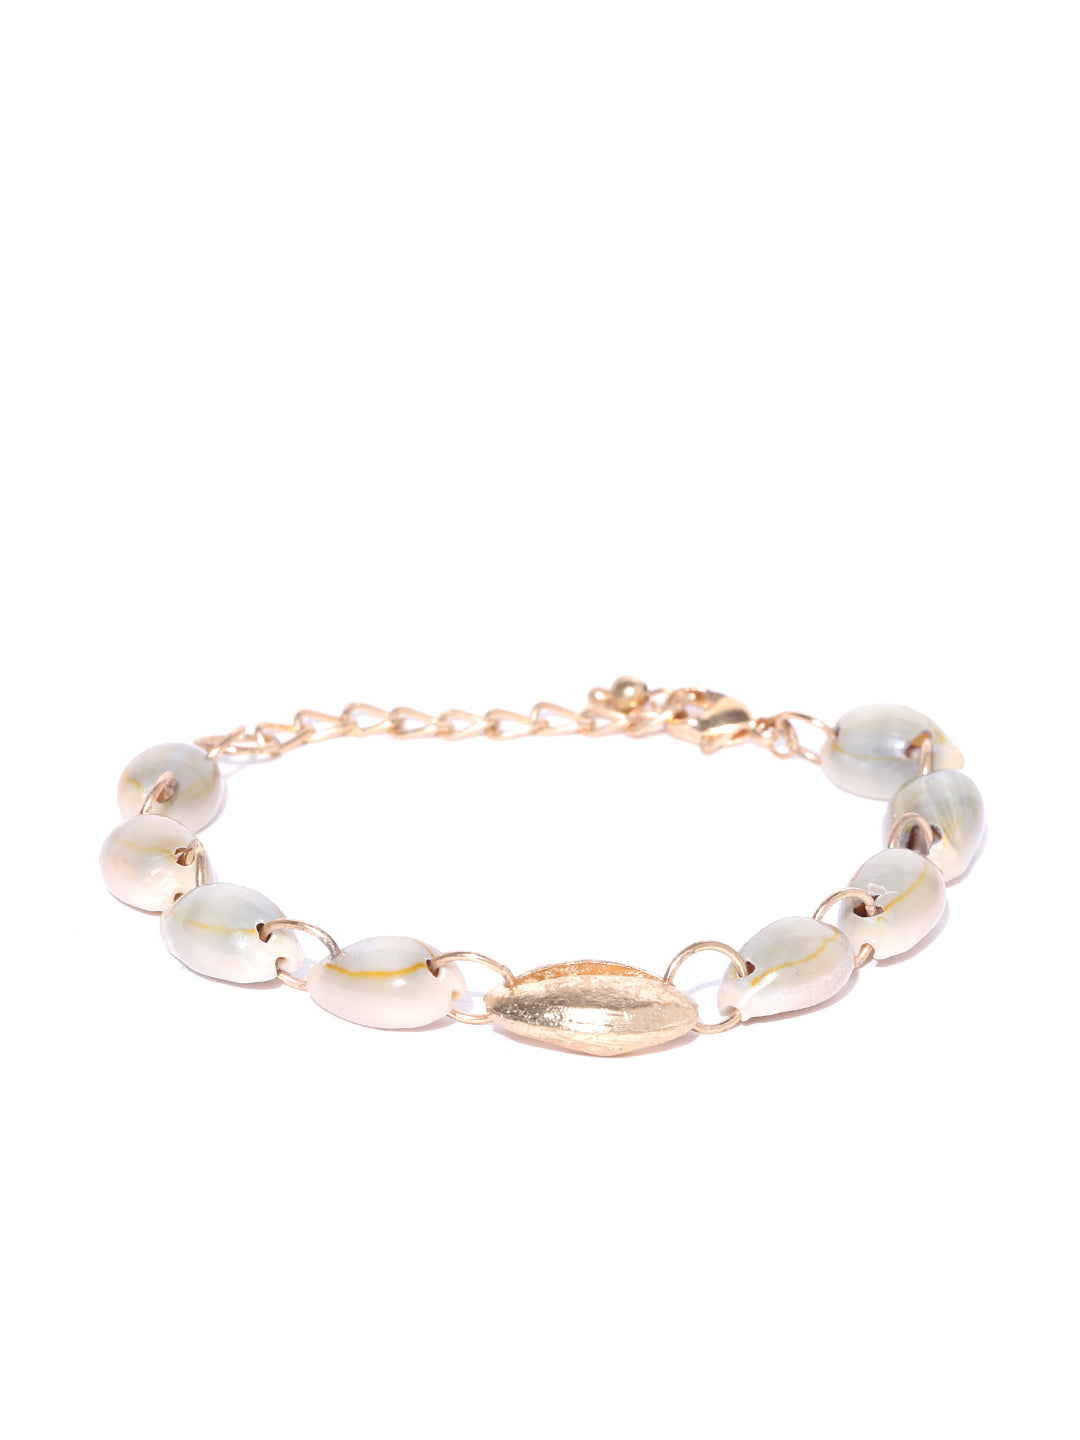 Blueberry golden and white shell bracelet